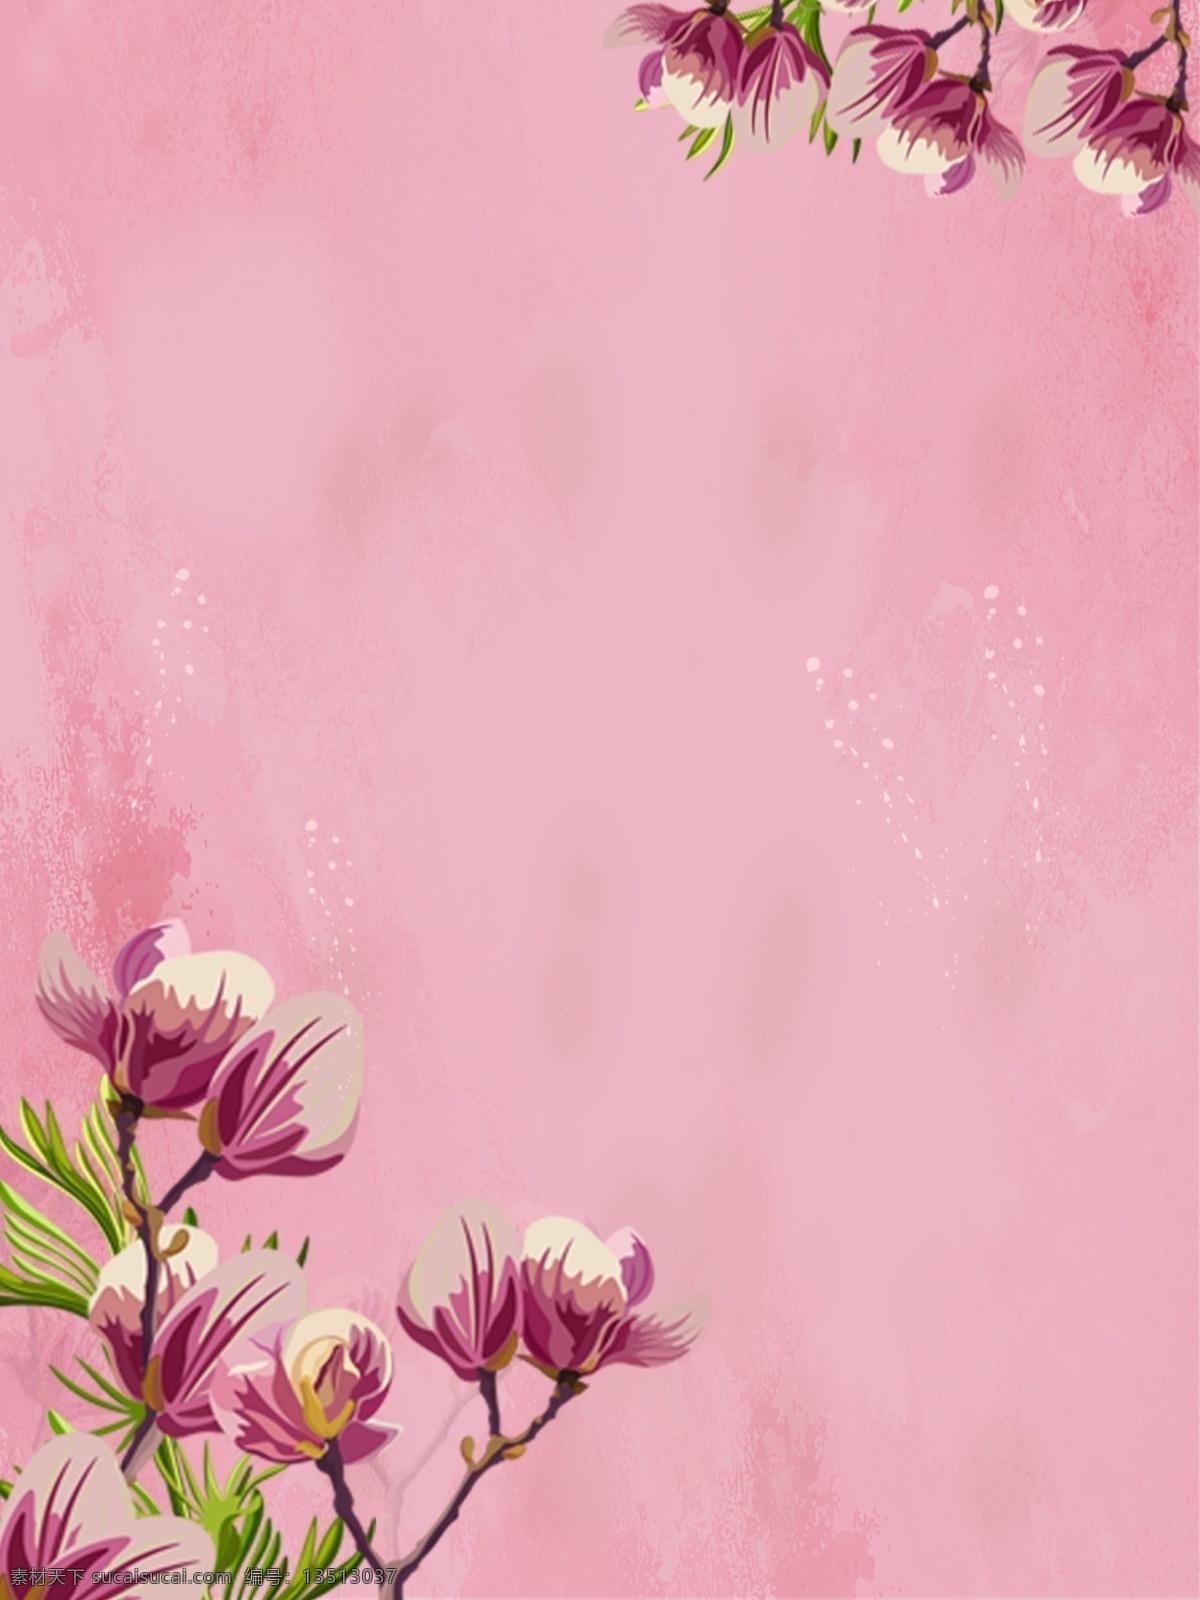 粉色 水彩 手绘 风 花朵 简约 背景 图 手绘风 背景图